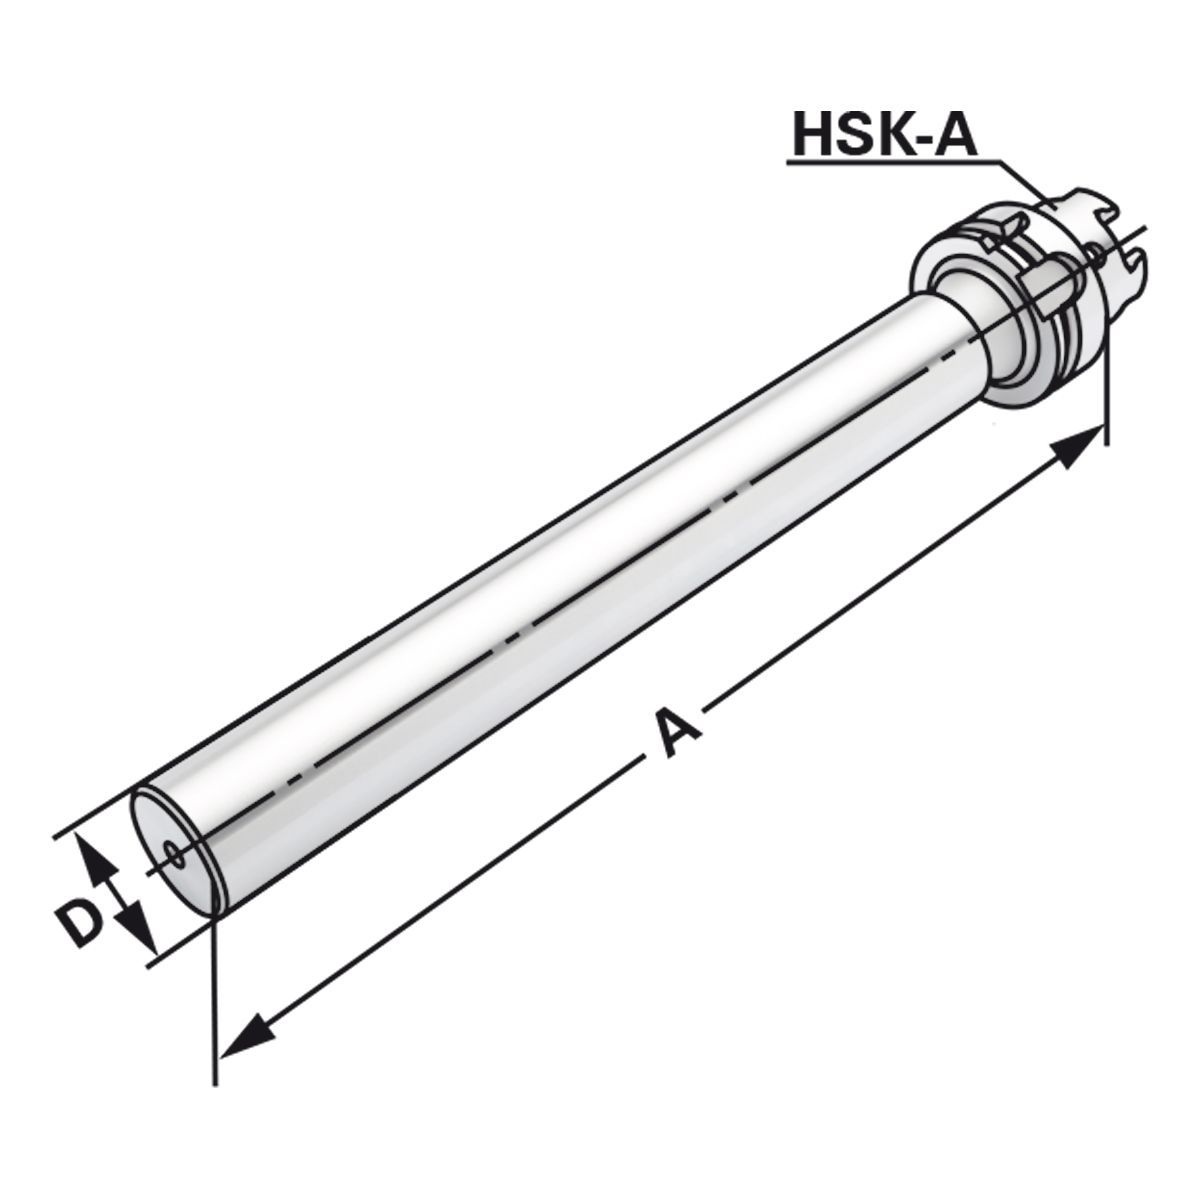 Kontrolldorn HSK 100-50-329 DIN 69893 Form A